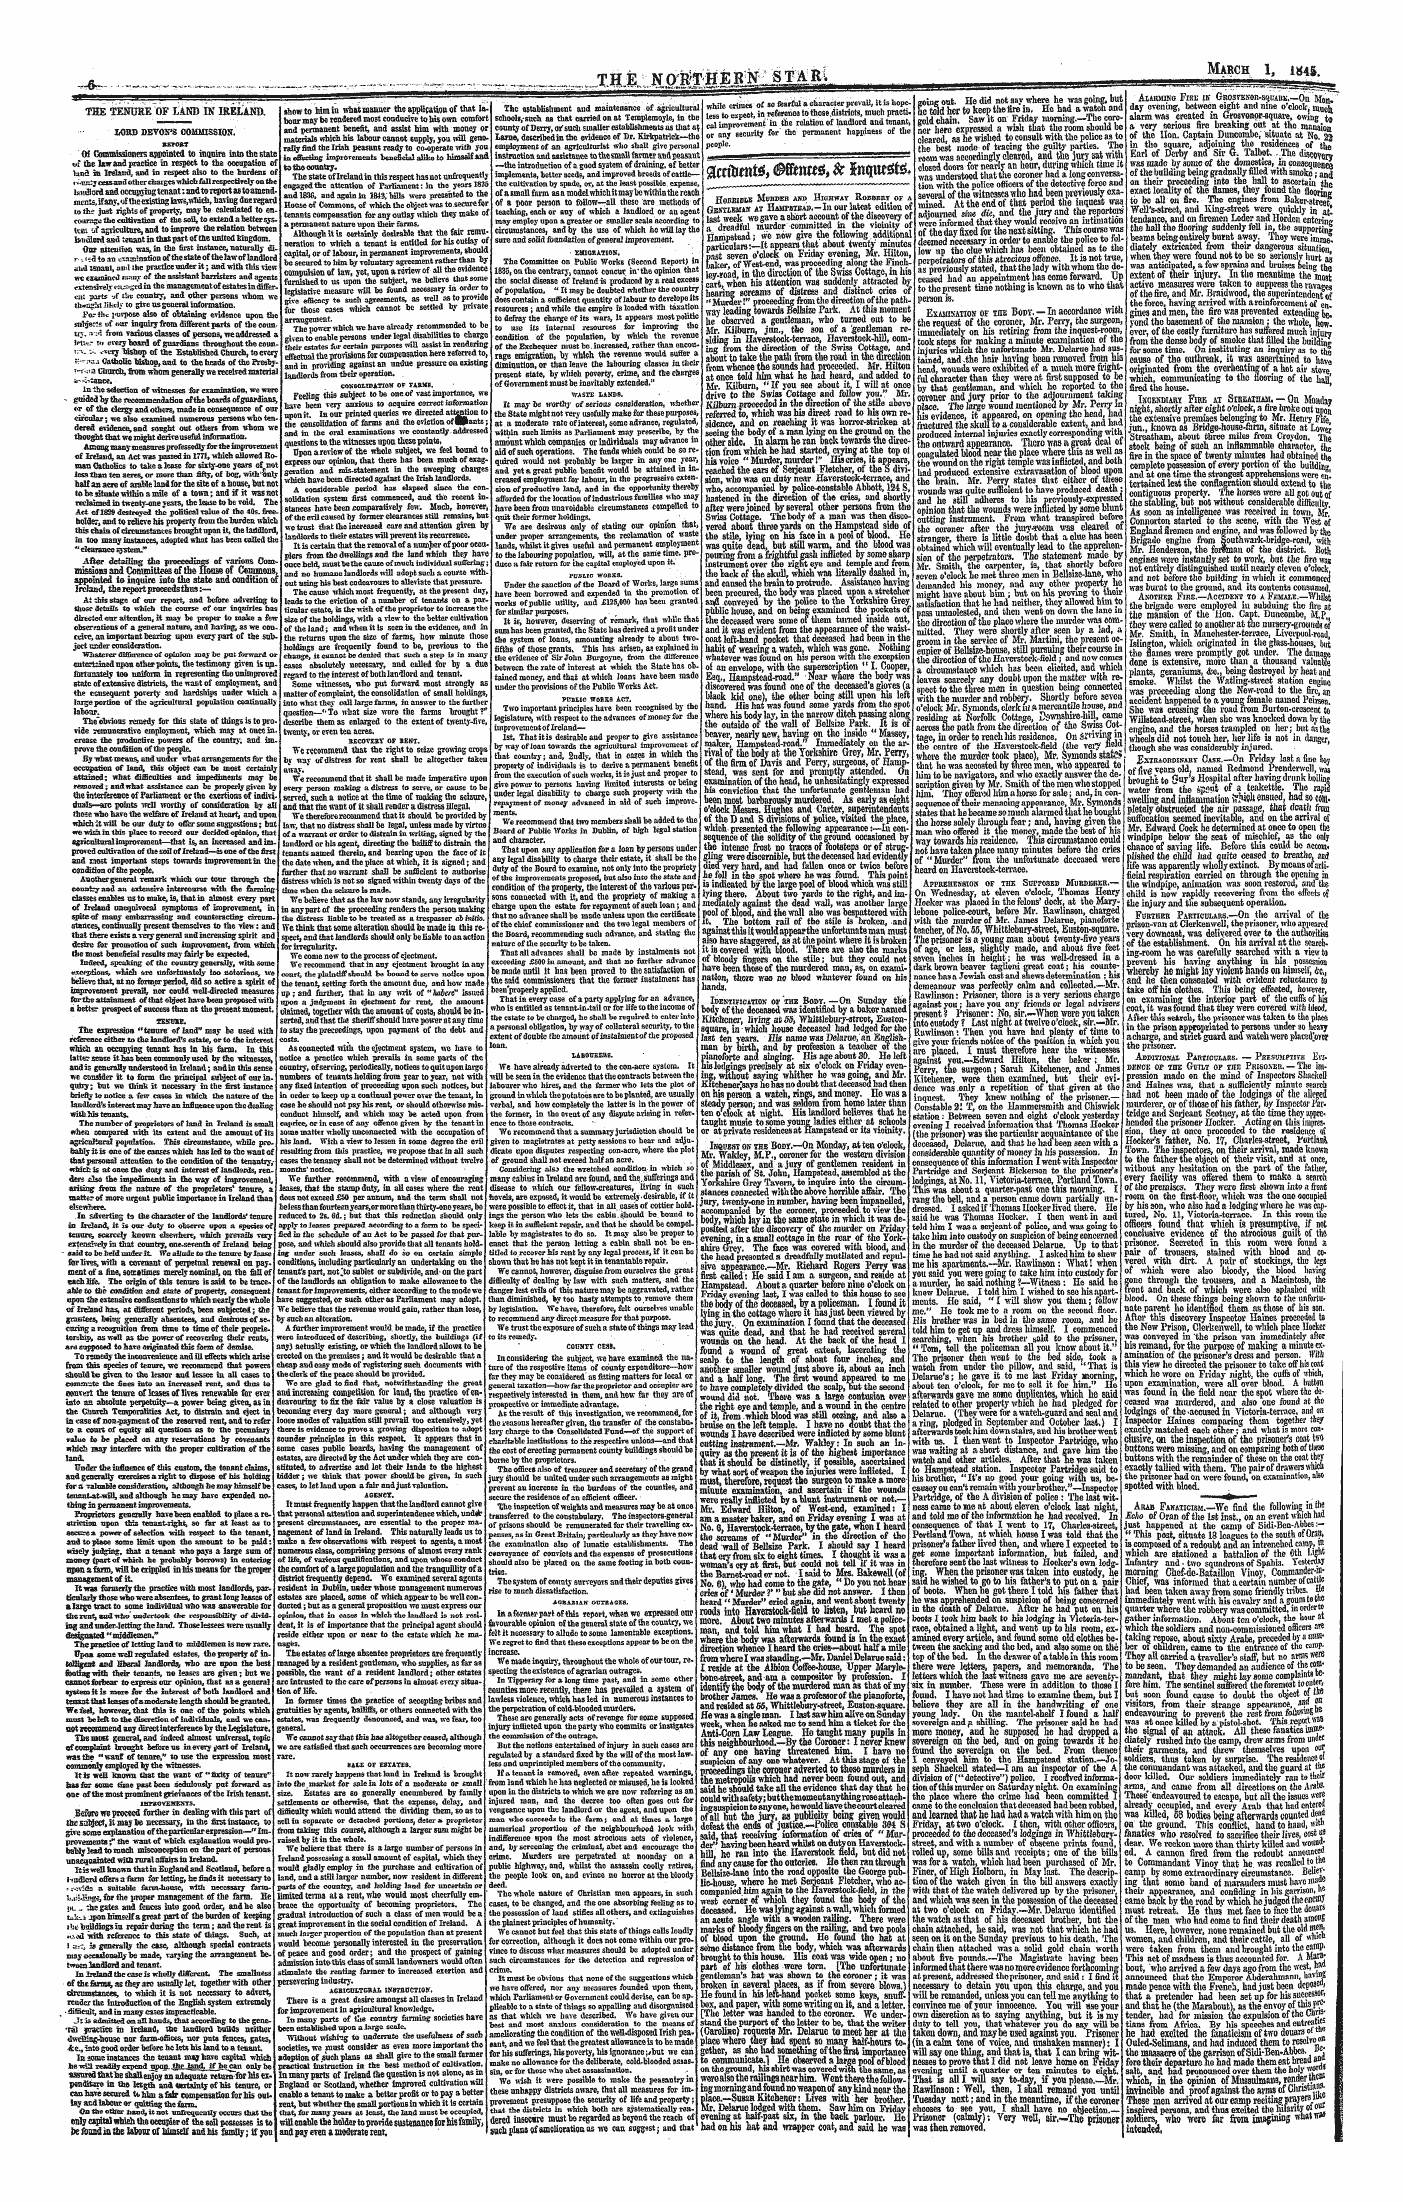 Northern Star (1837-1852): jS F Y, 1st edition - Gcetotntt* Mntttf, & H\M*Te*